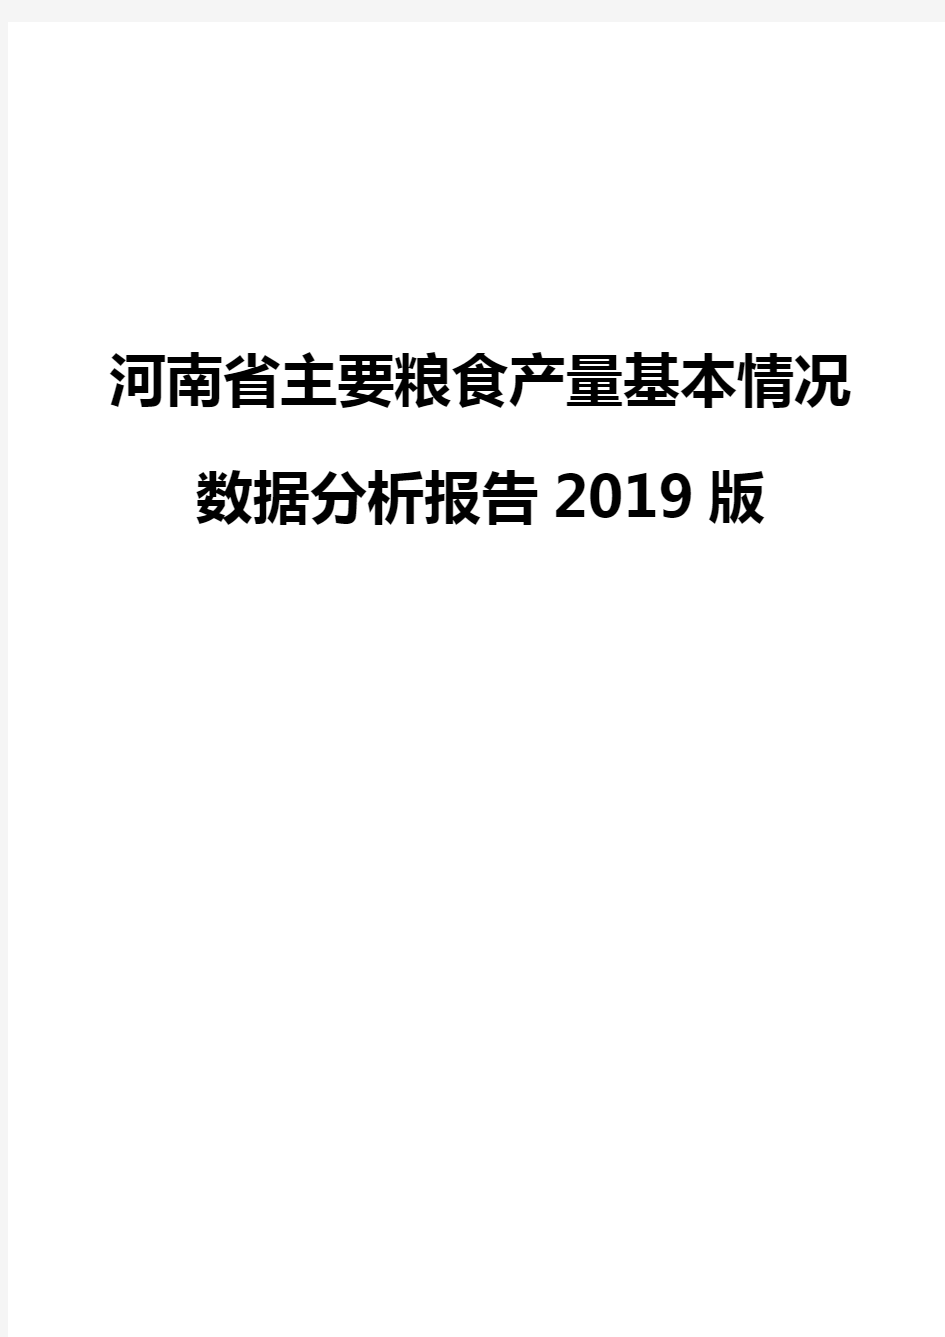 河南省主要粮食产量基本情况数据分析报告2019版